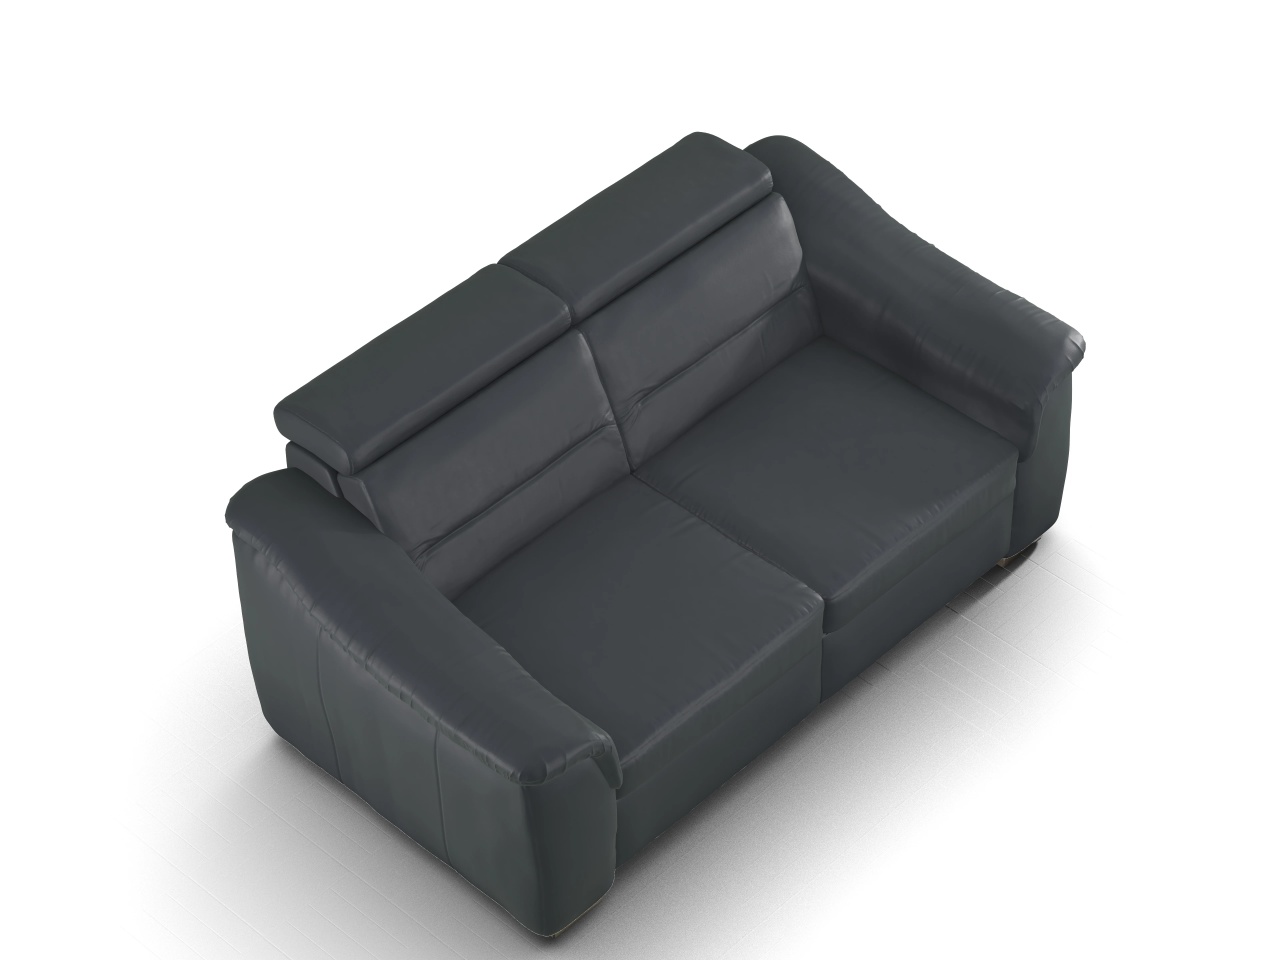 Sitz Concept select 1008 3-Sitzer Sofa